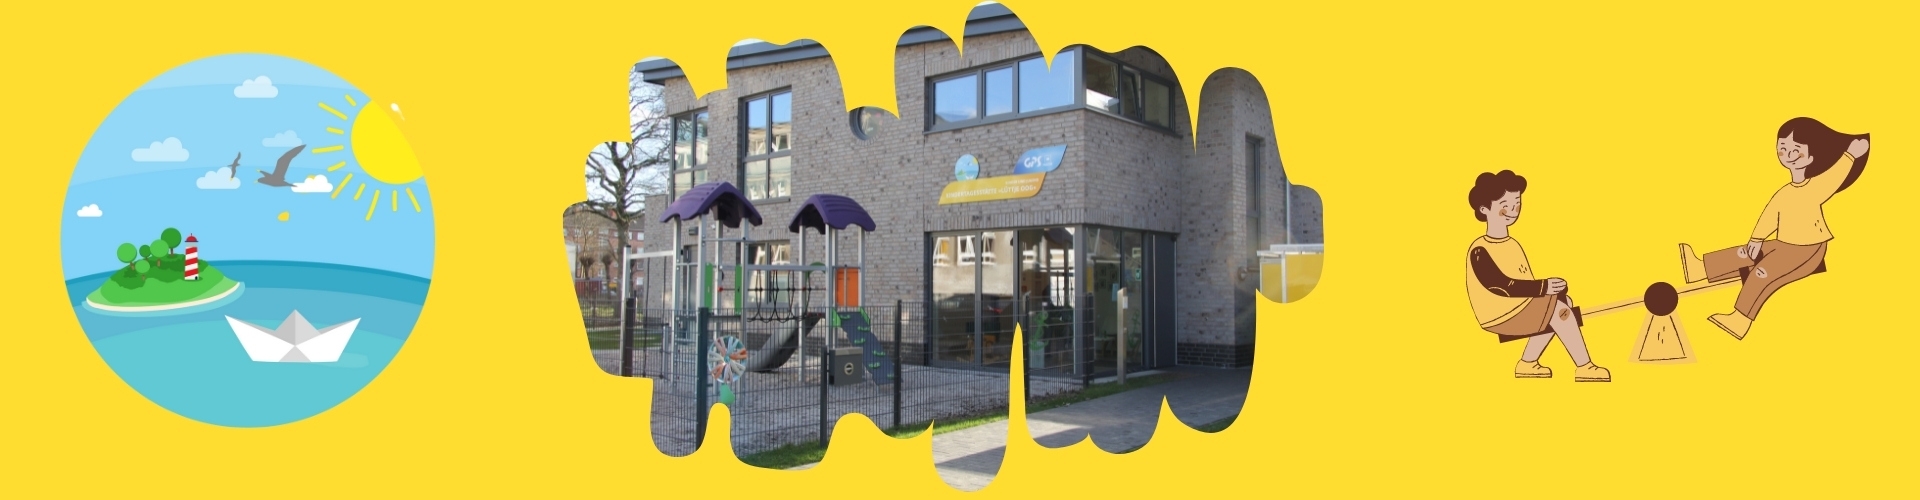 Man sieht den Eingang des Kindergarten Lüttje Oog und einen Spielplatz mit Rutsche